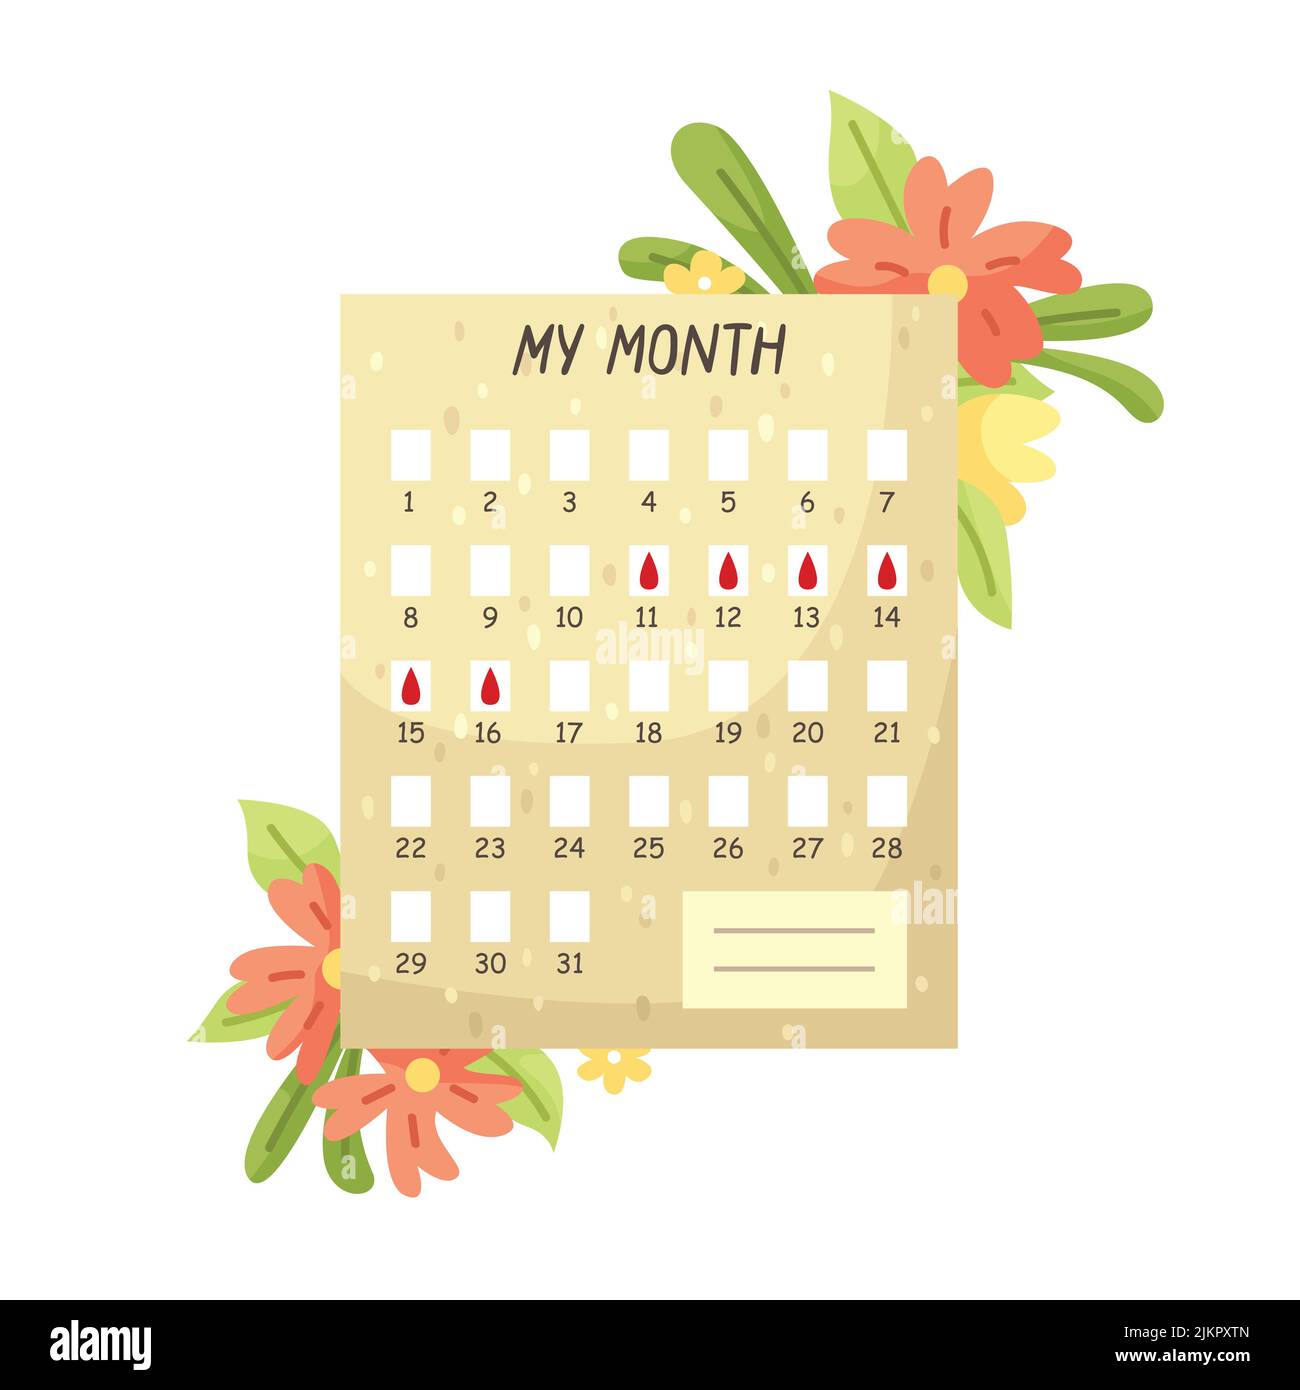 Vector illustration of the menstrual cycle calendar. Women's calendar. Stock Vector